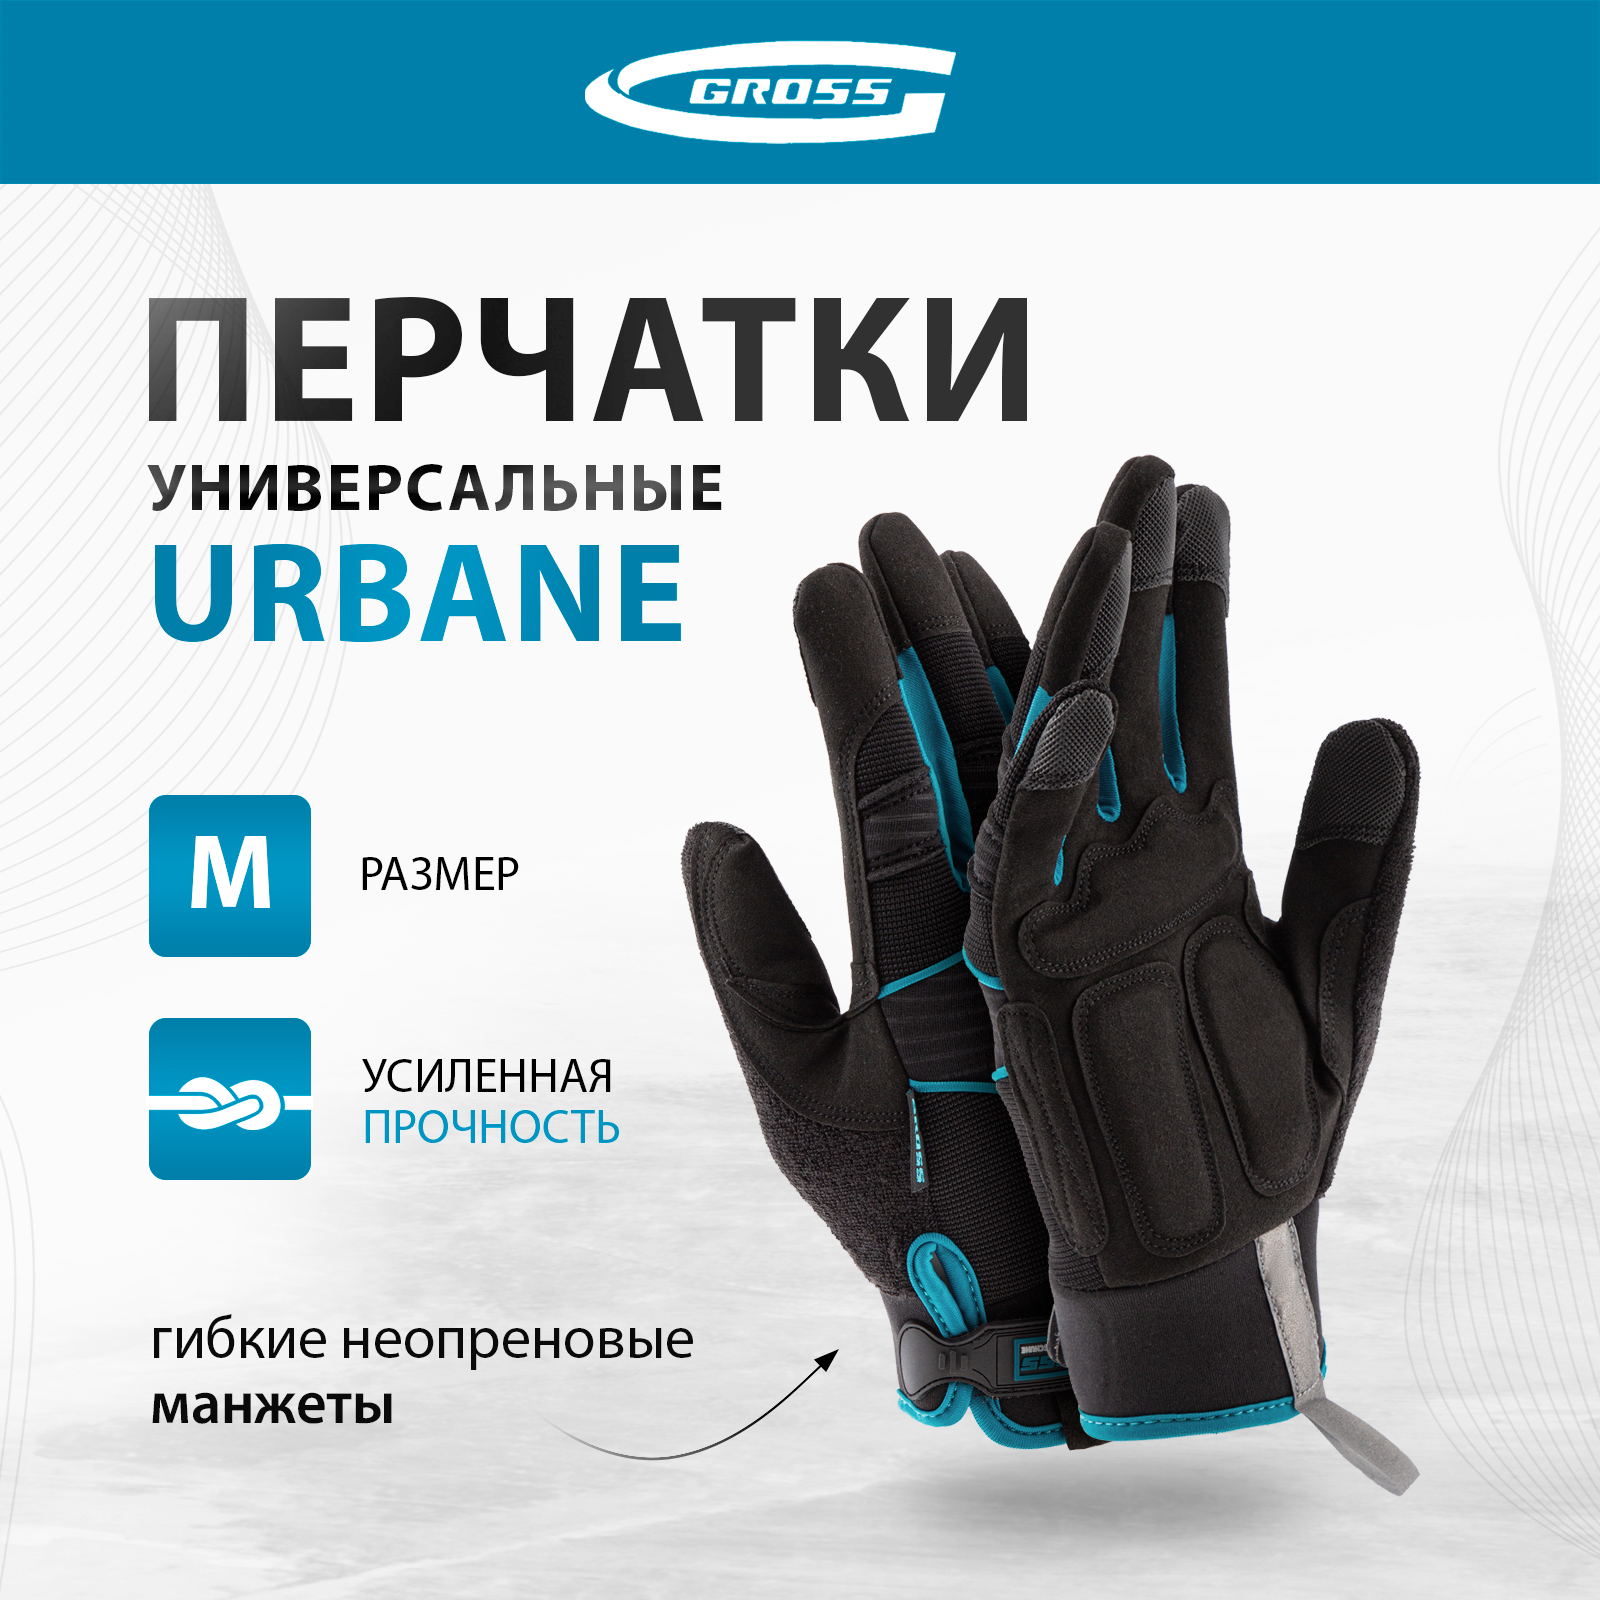 Перчатки универсальные комбинированные GROSS URBANE размер M (8) 90311 химостойкие неопреновые комбинированные перчатки ампаро